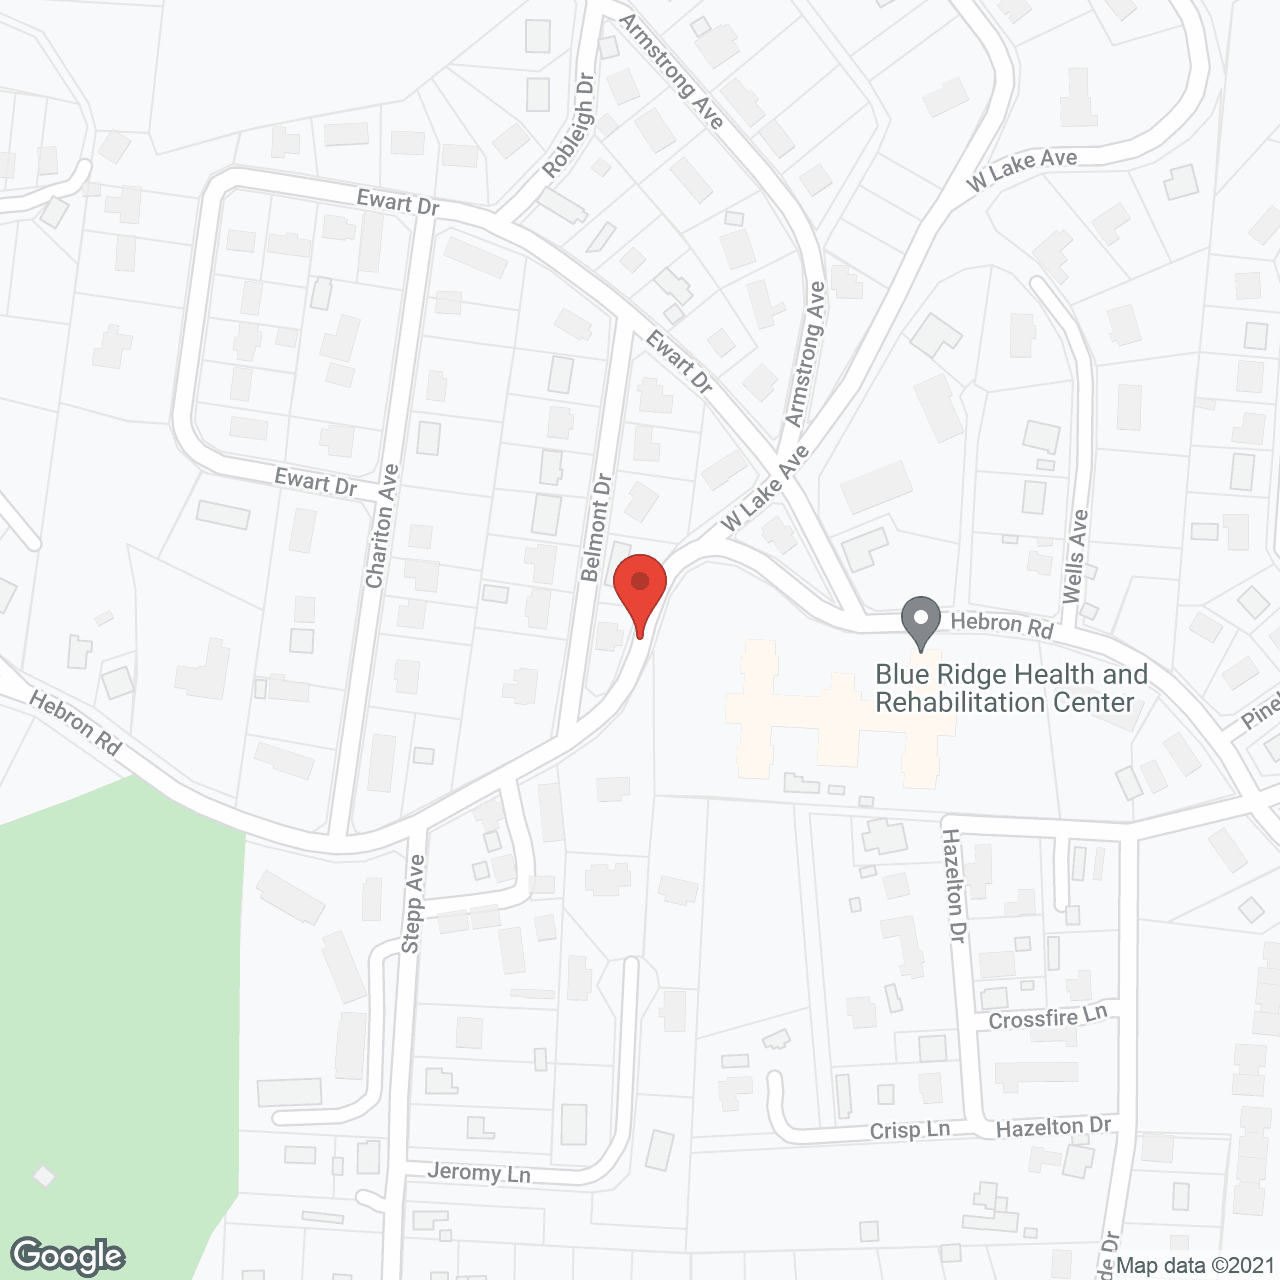 Golden LivingCenter Hendersonville in google map